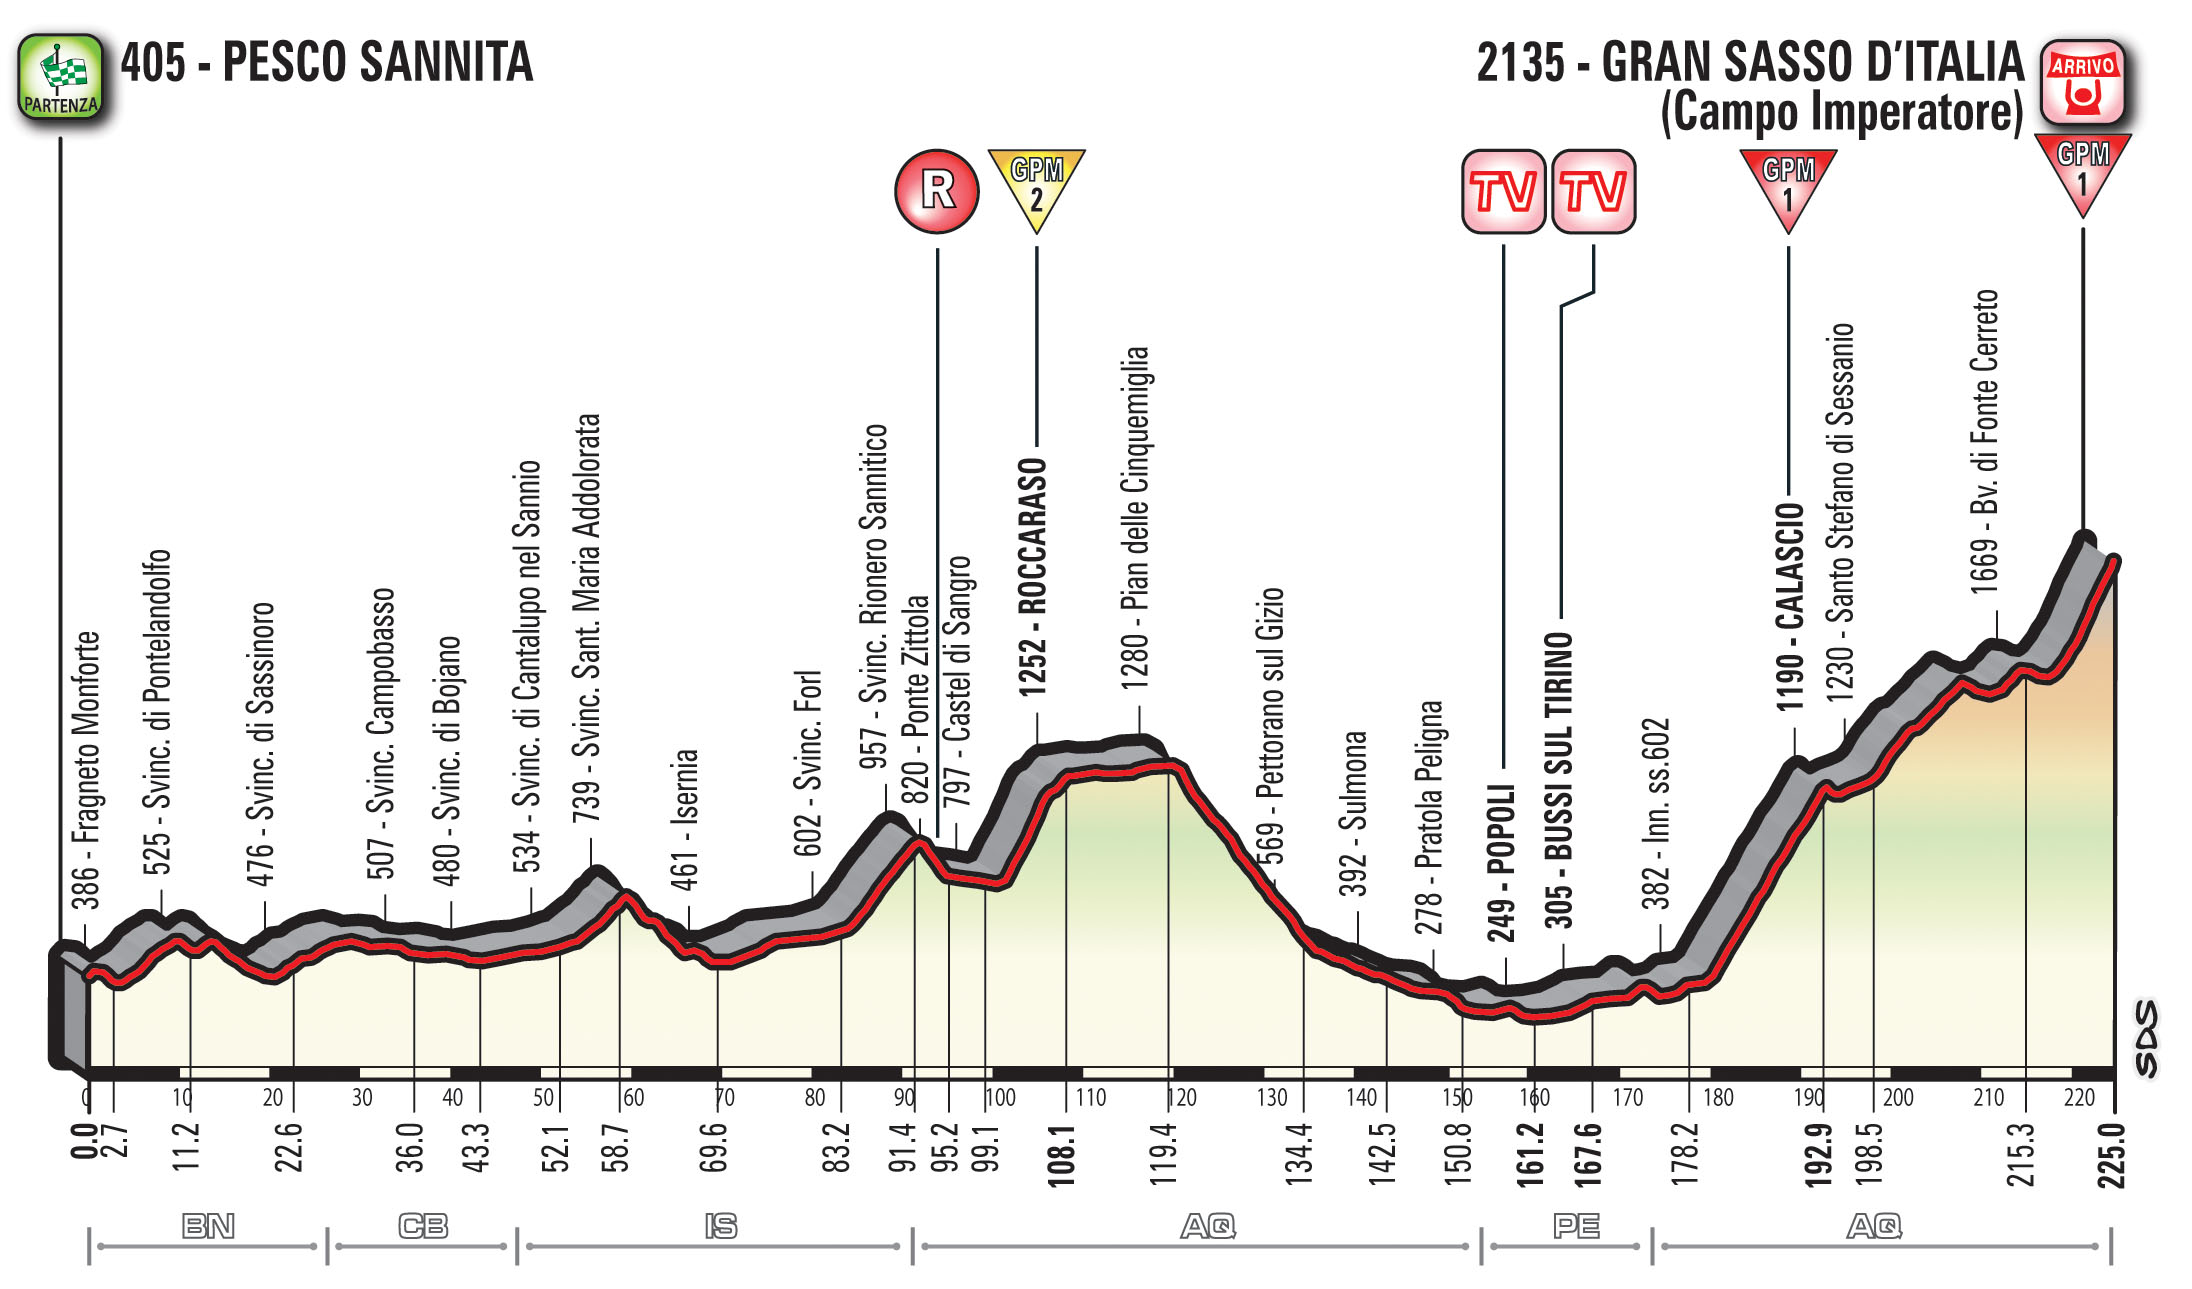 profil 9. etapu Giro d'Italia 2018